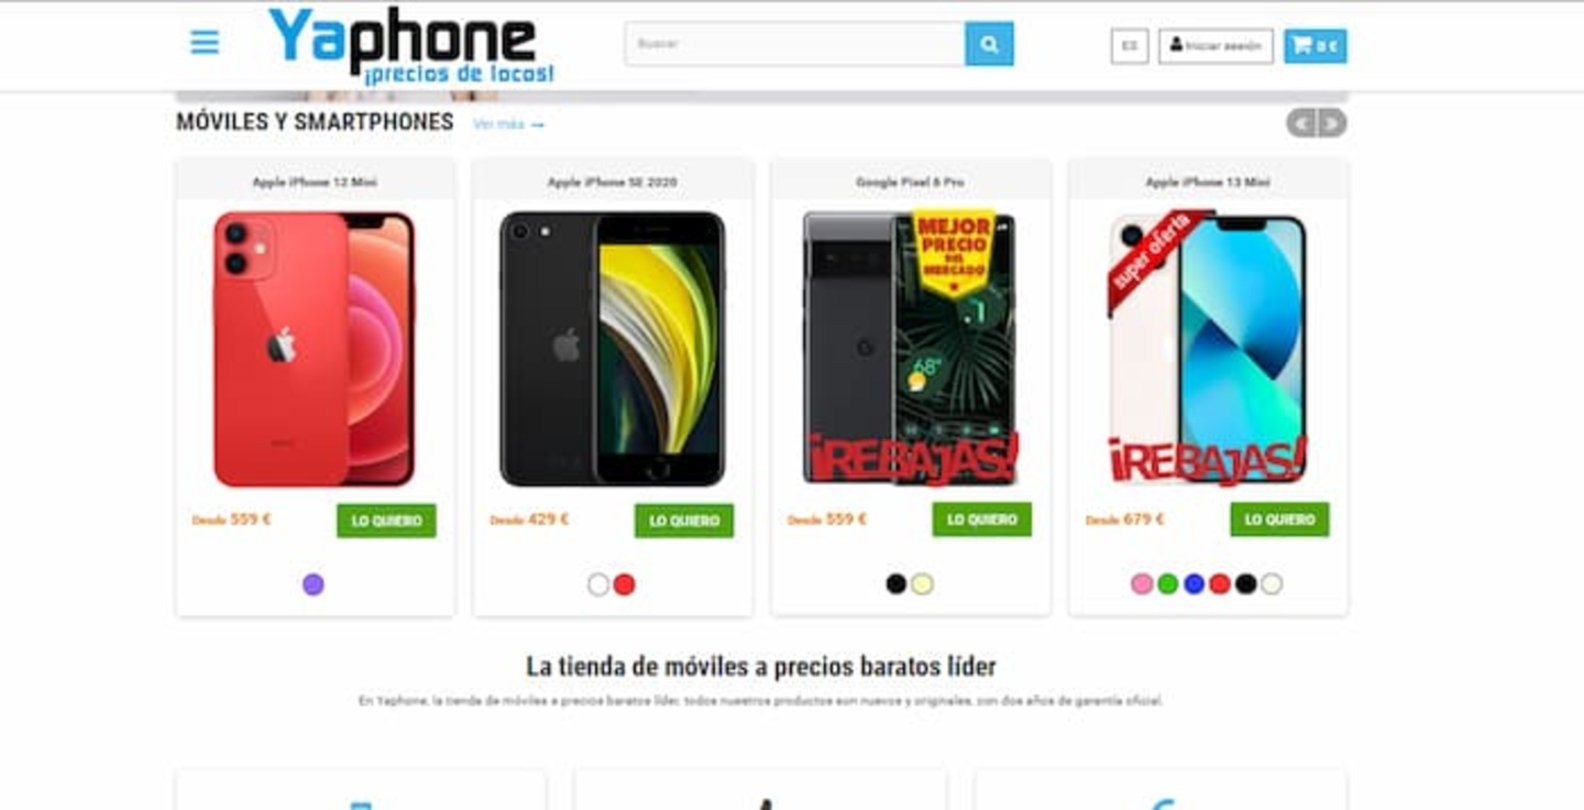 Tienda de móviles a precios baratos y smartphones - Yaphone